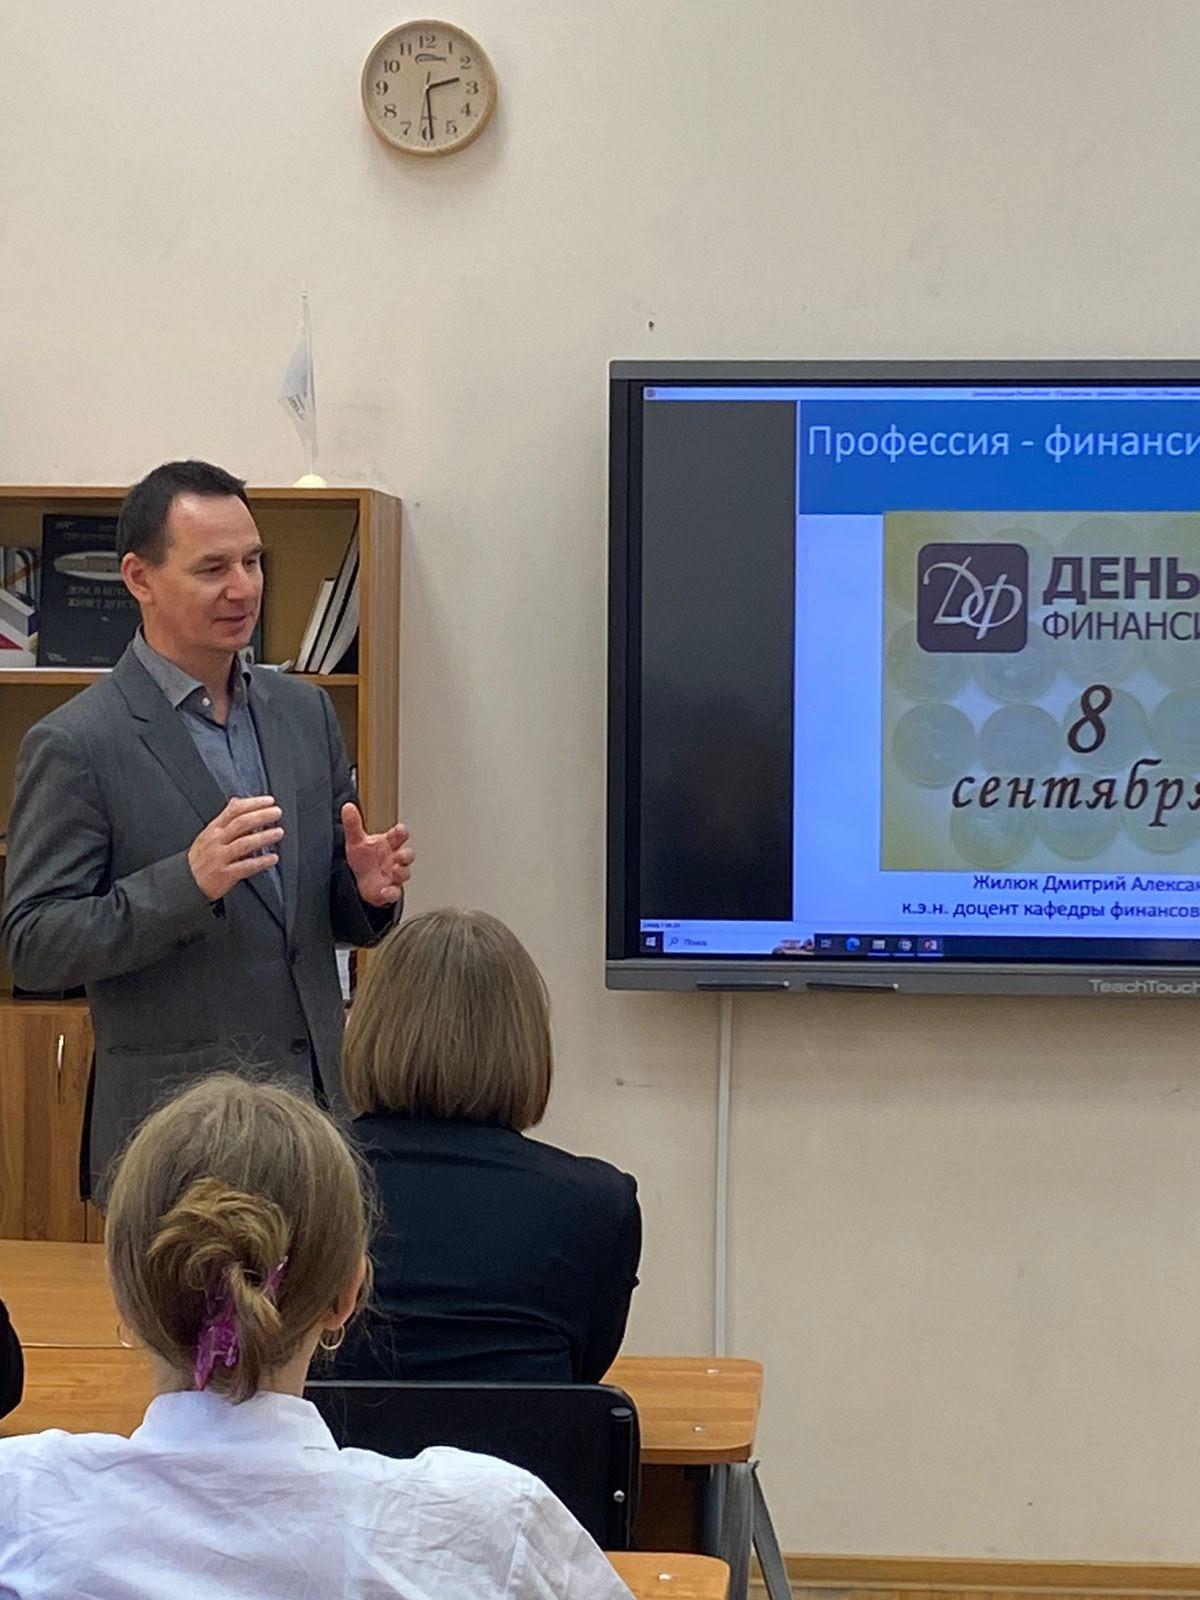 Кафедра финансов провела классный час для учеников Второй Санкт-Петербургской гимназии